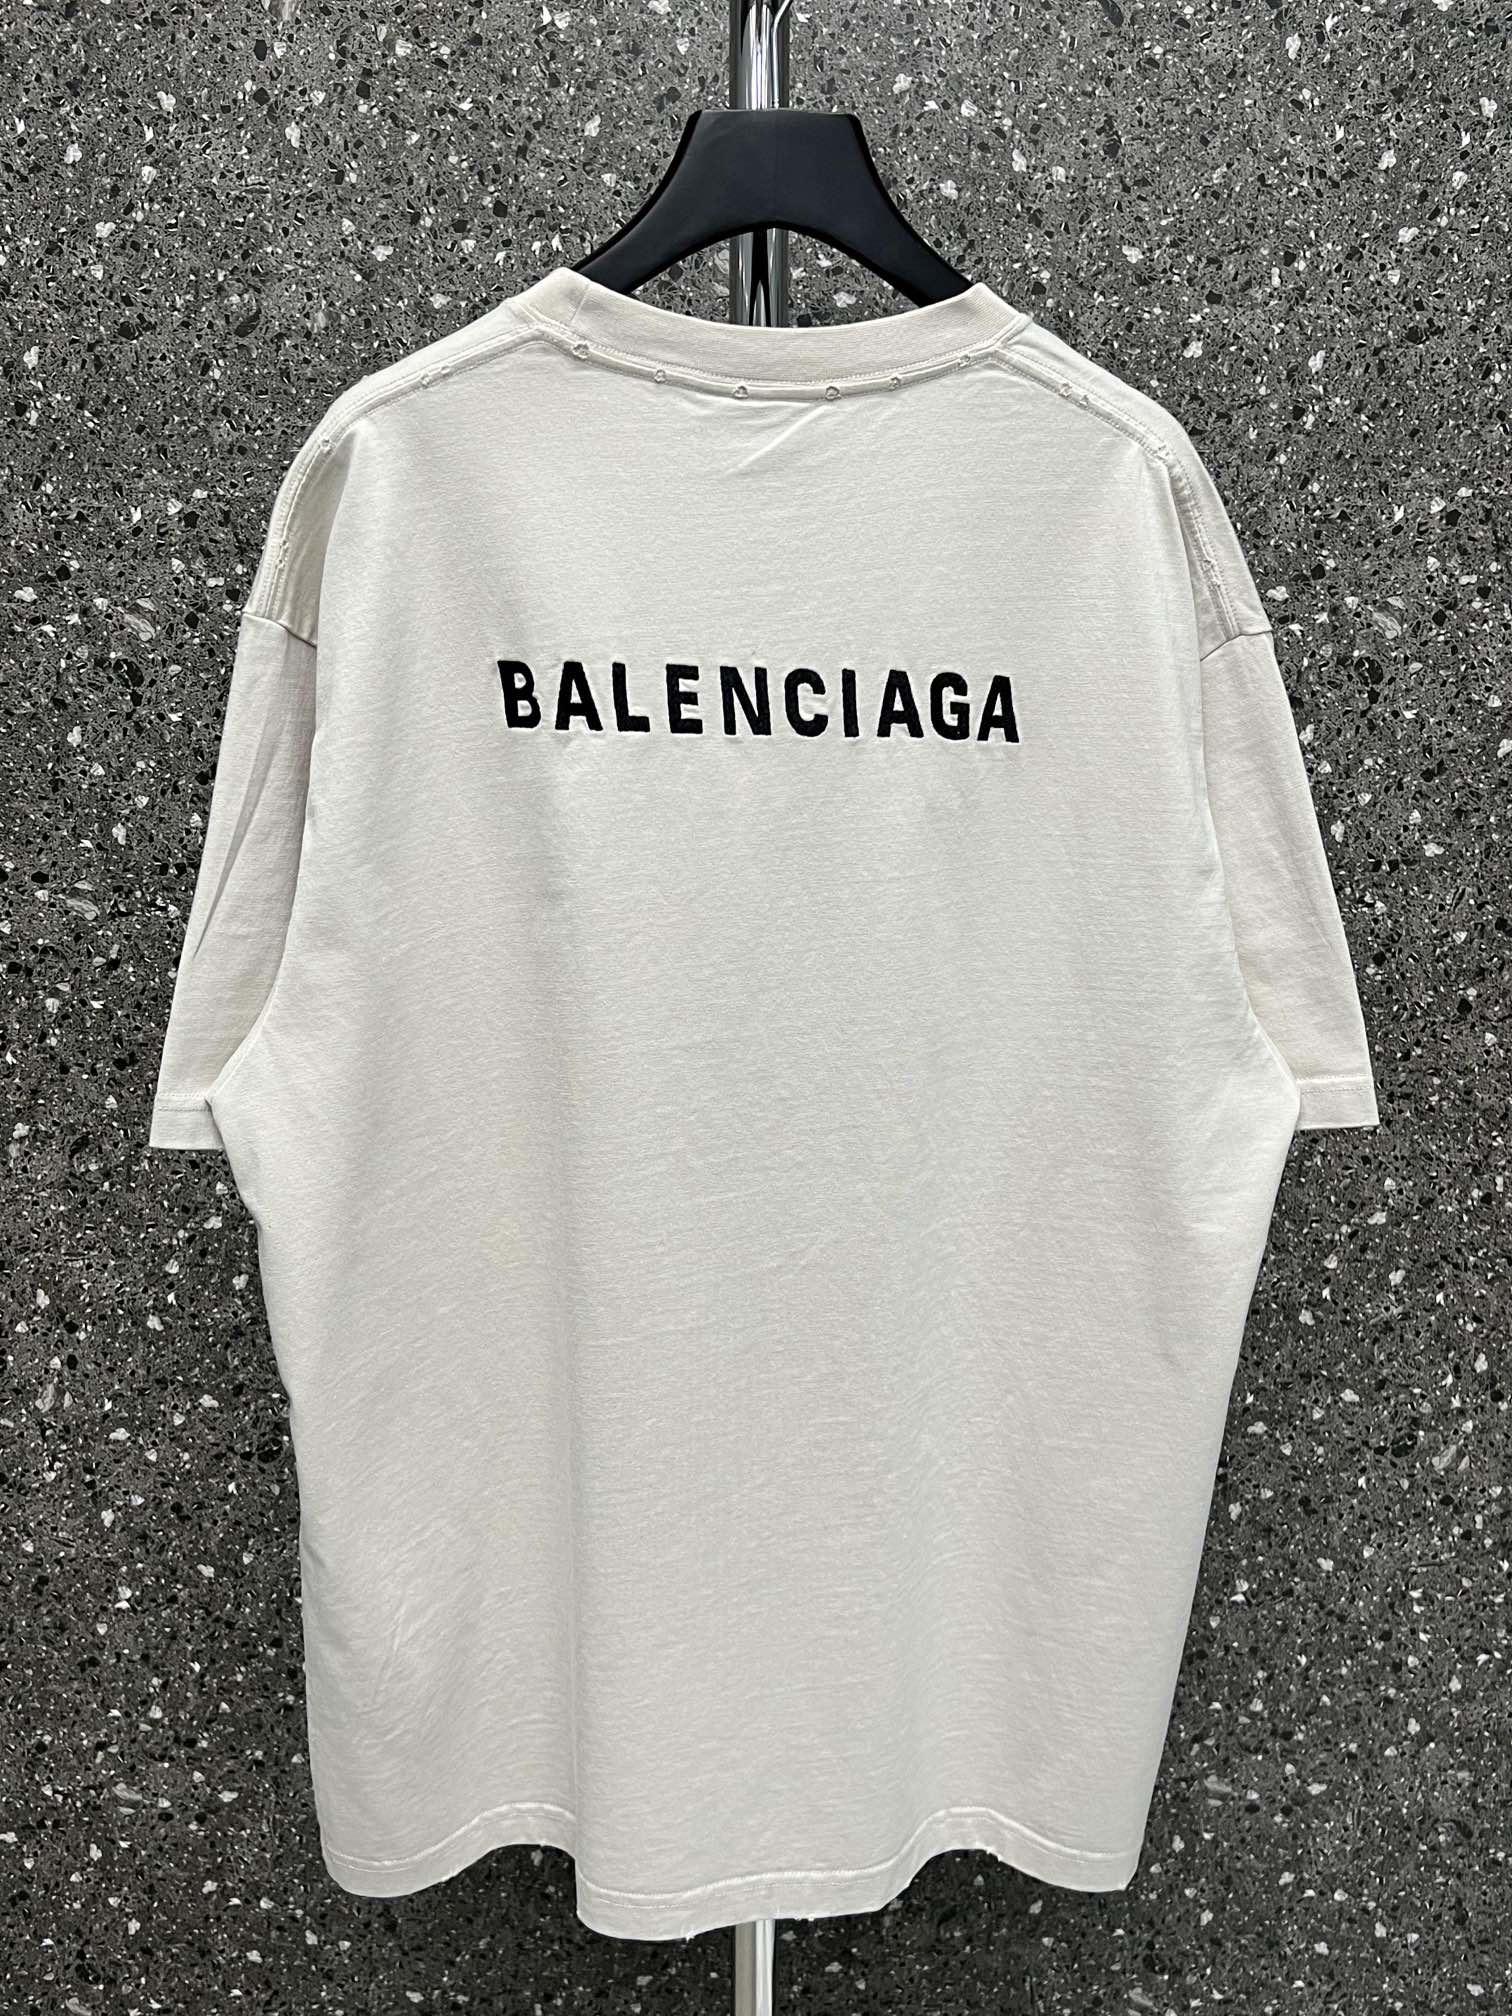  限定セール低価 バレンシアガロゴ tシャツ偽物  男女兼用  ホワイト_2